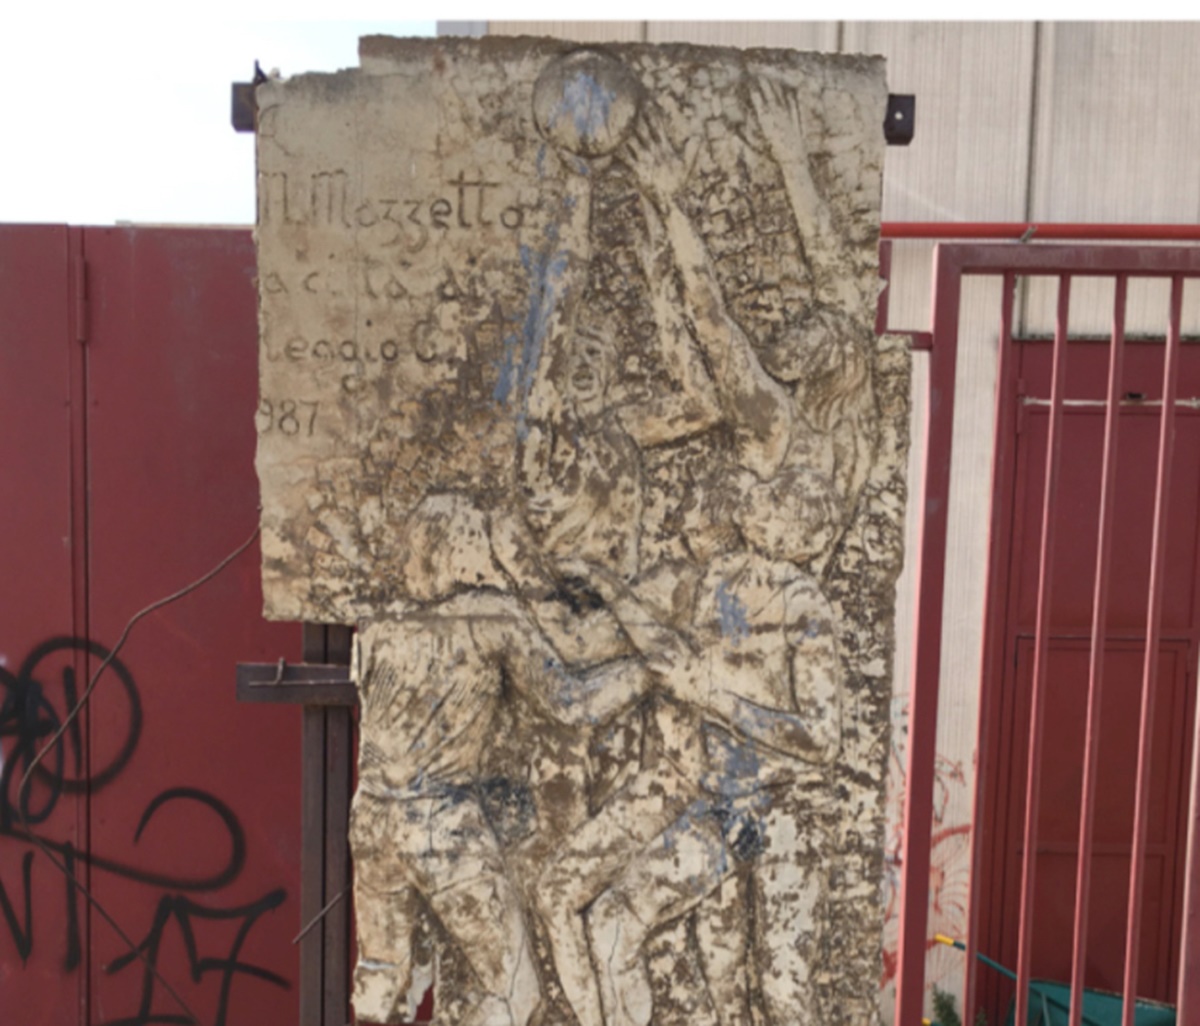 Distruzione stele Mazzetto, Cantarella: «Avevamo chiesto di spostarla nel 2015»